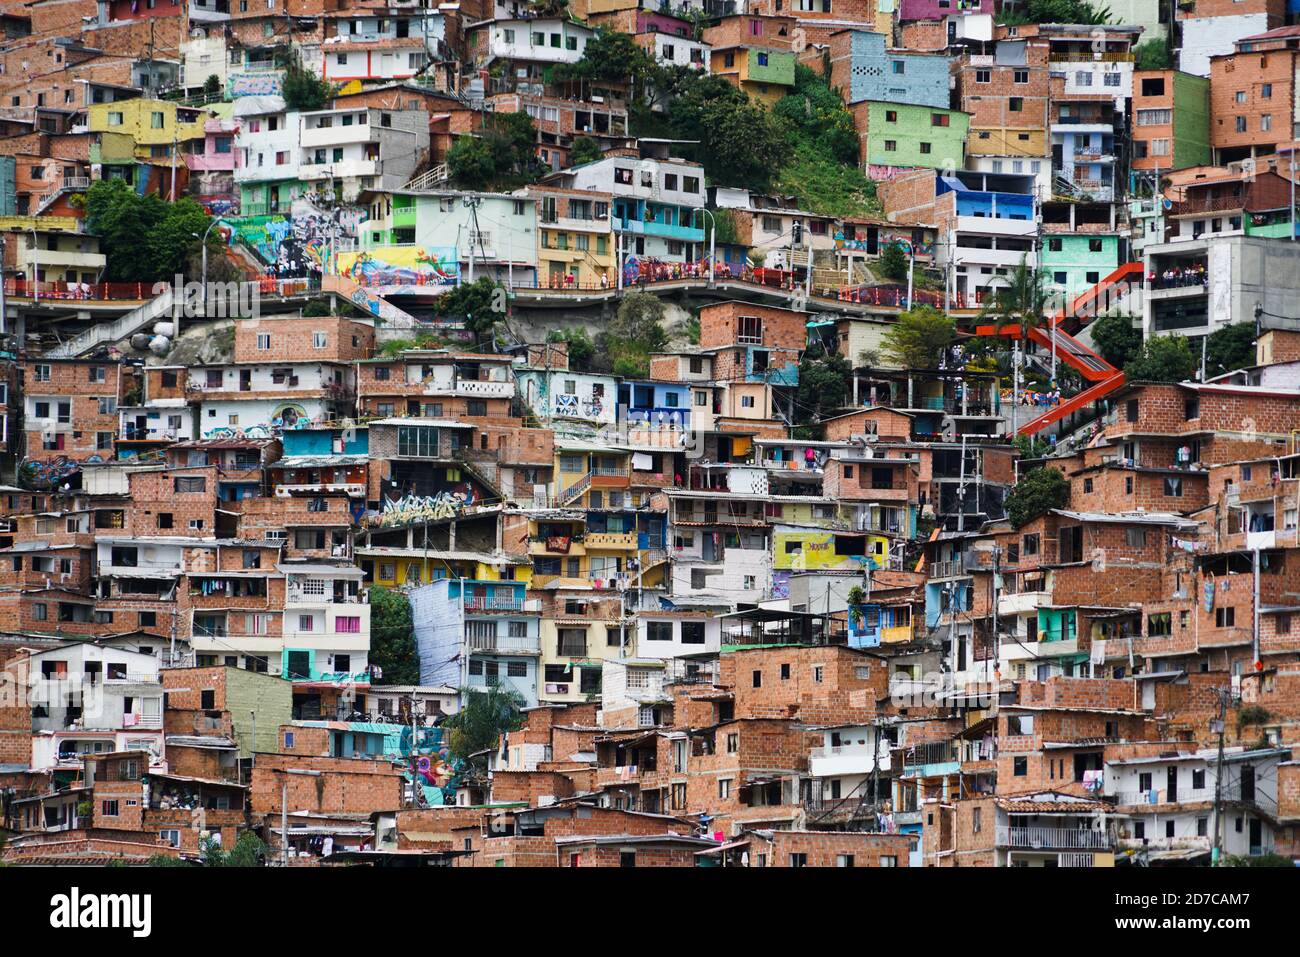 Comuna 13 in Medellin, Colombia Stock Photo